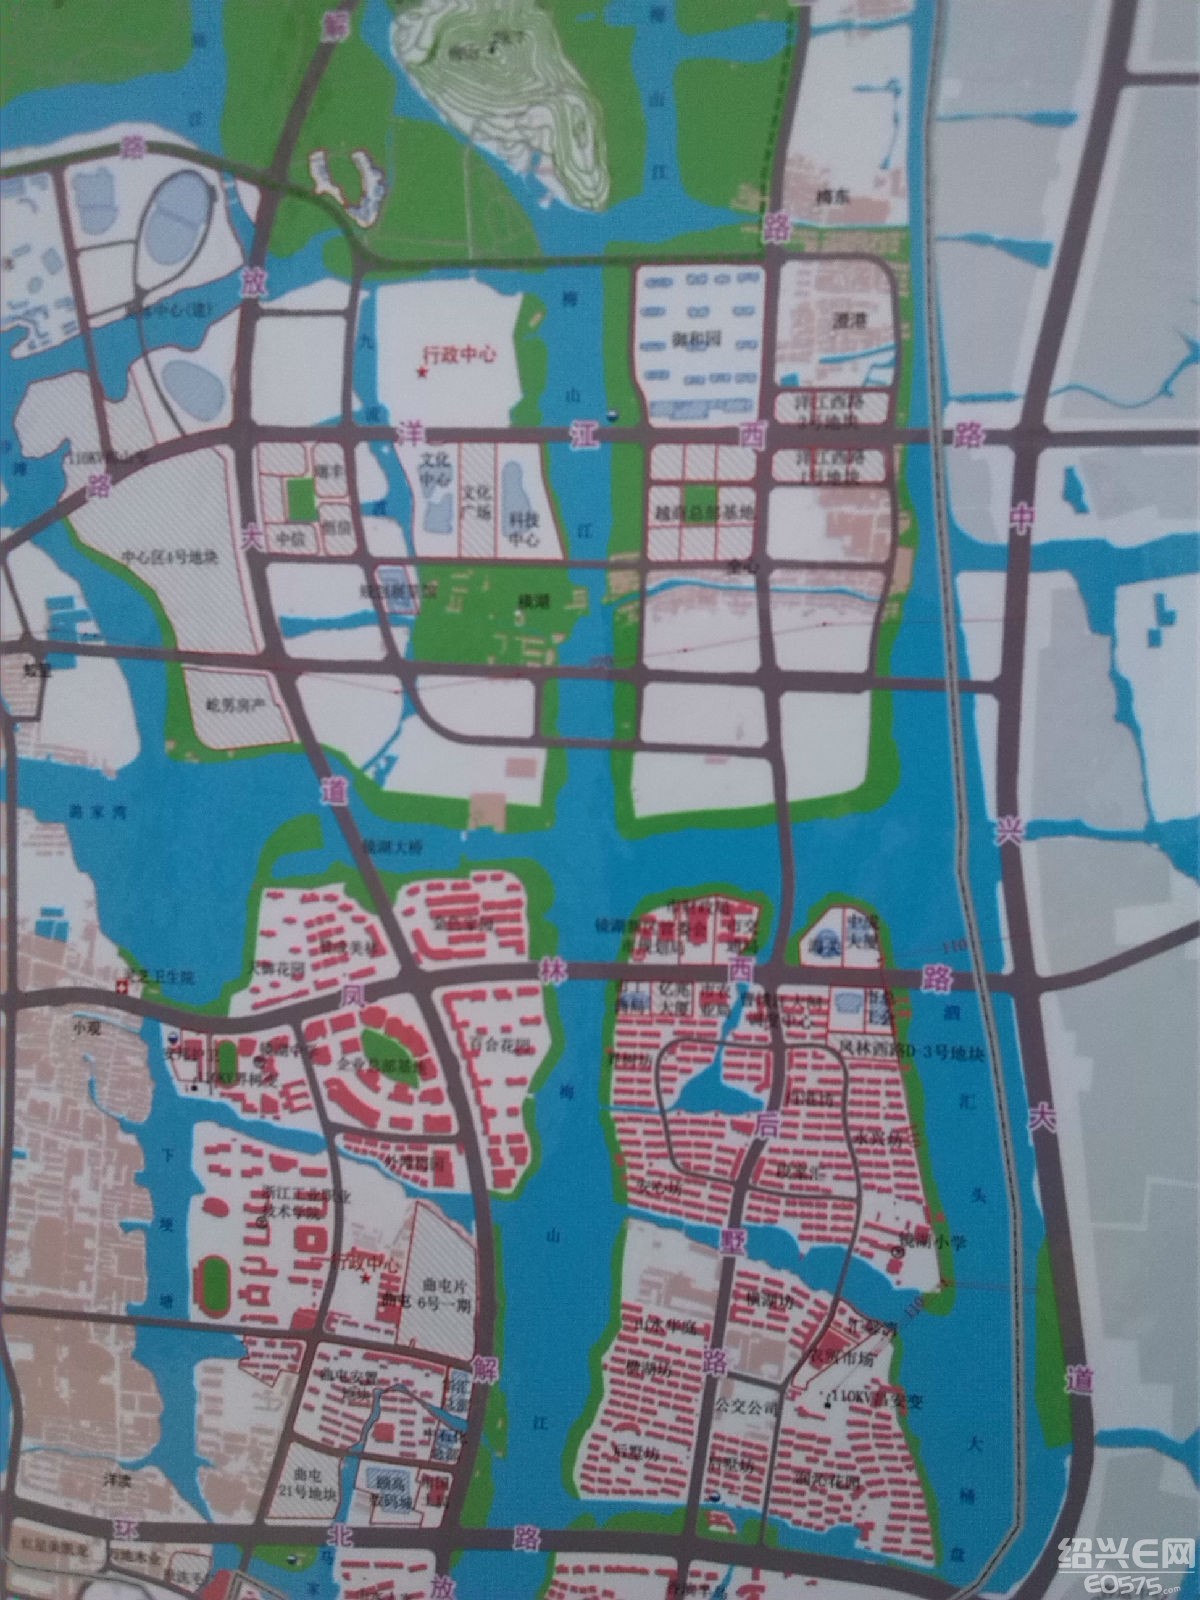 分享几张镜湖新区分区规划图|第四城市城建 - 绍兴e